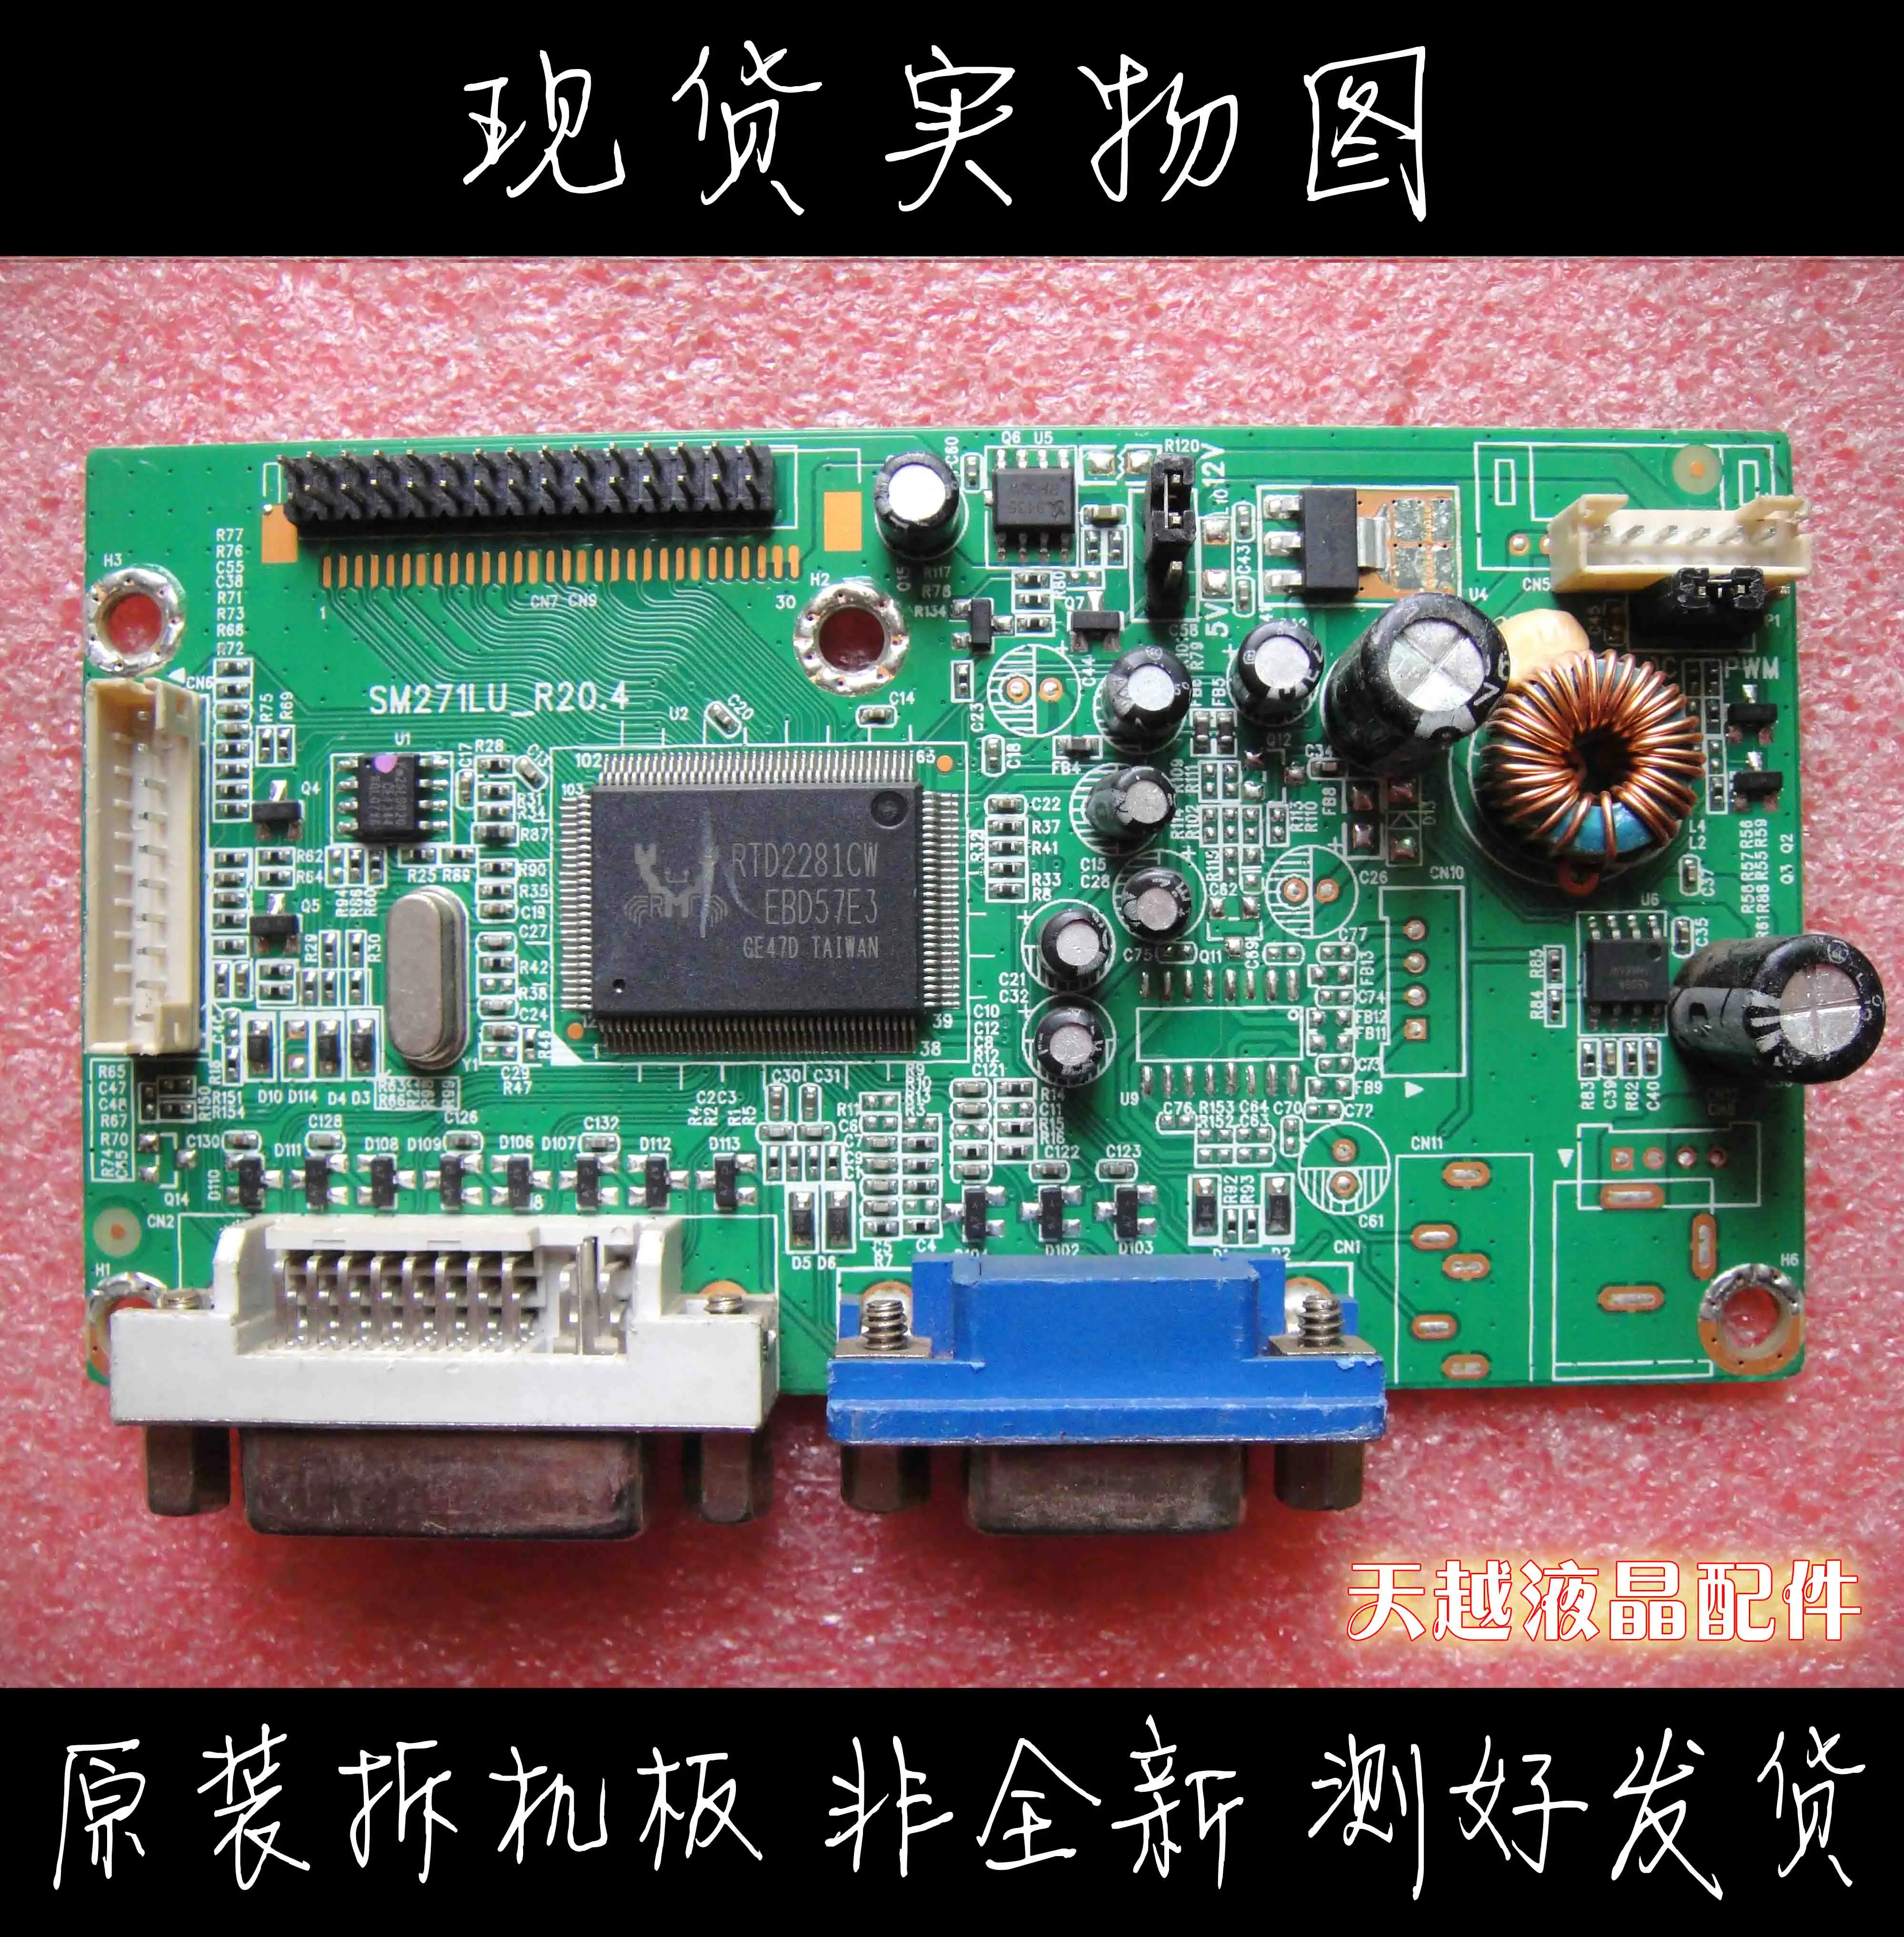 

Original AOC Guanjie M3285vw Driver Board VX3209-SW Lz2832c Main Board SM271LU-R20.4